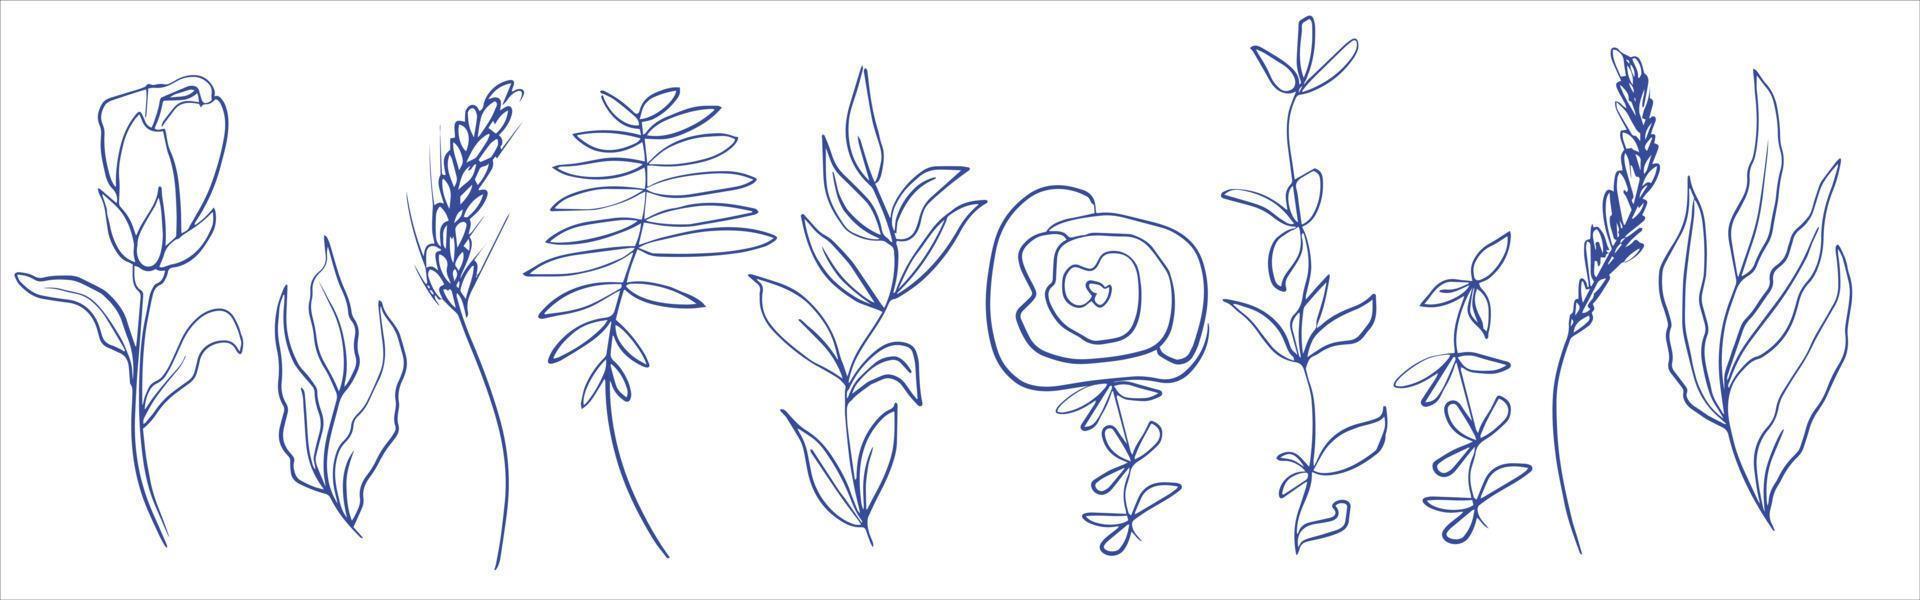 éléments botaniques abstraits pour la conception. herbe des champs et fleurs. branches avec feuilles, roses et pivoines. minimalisme. dessin linéaire vecteur